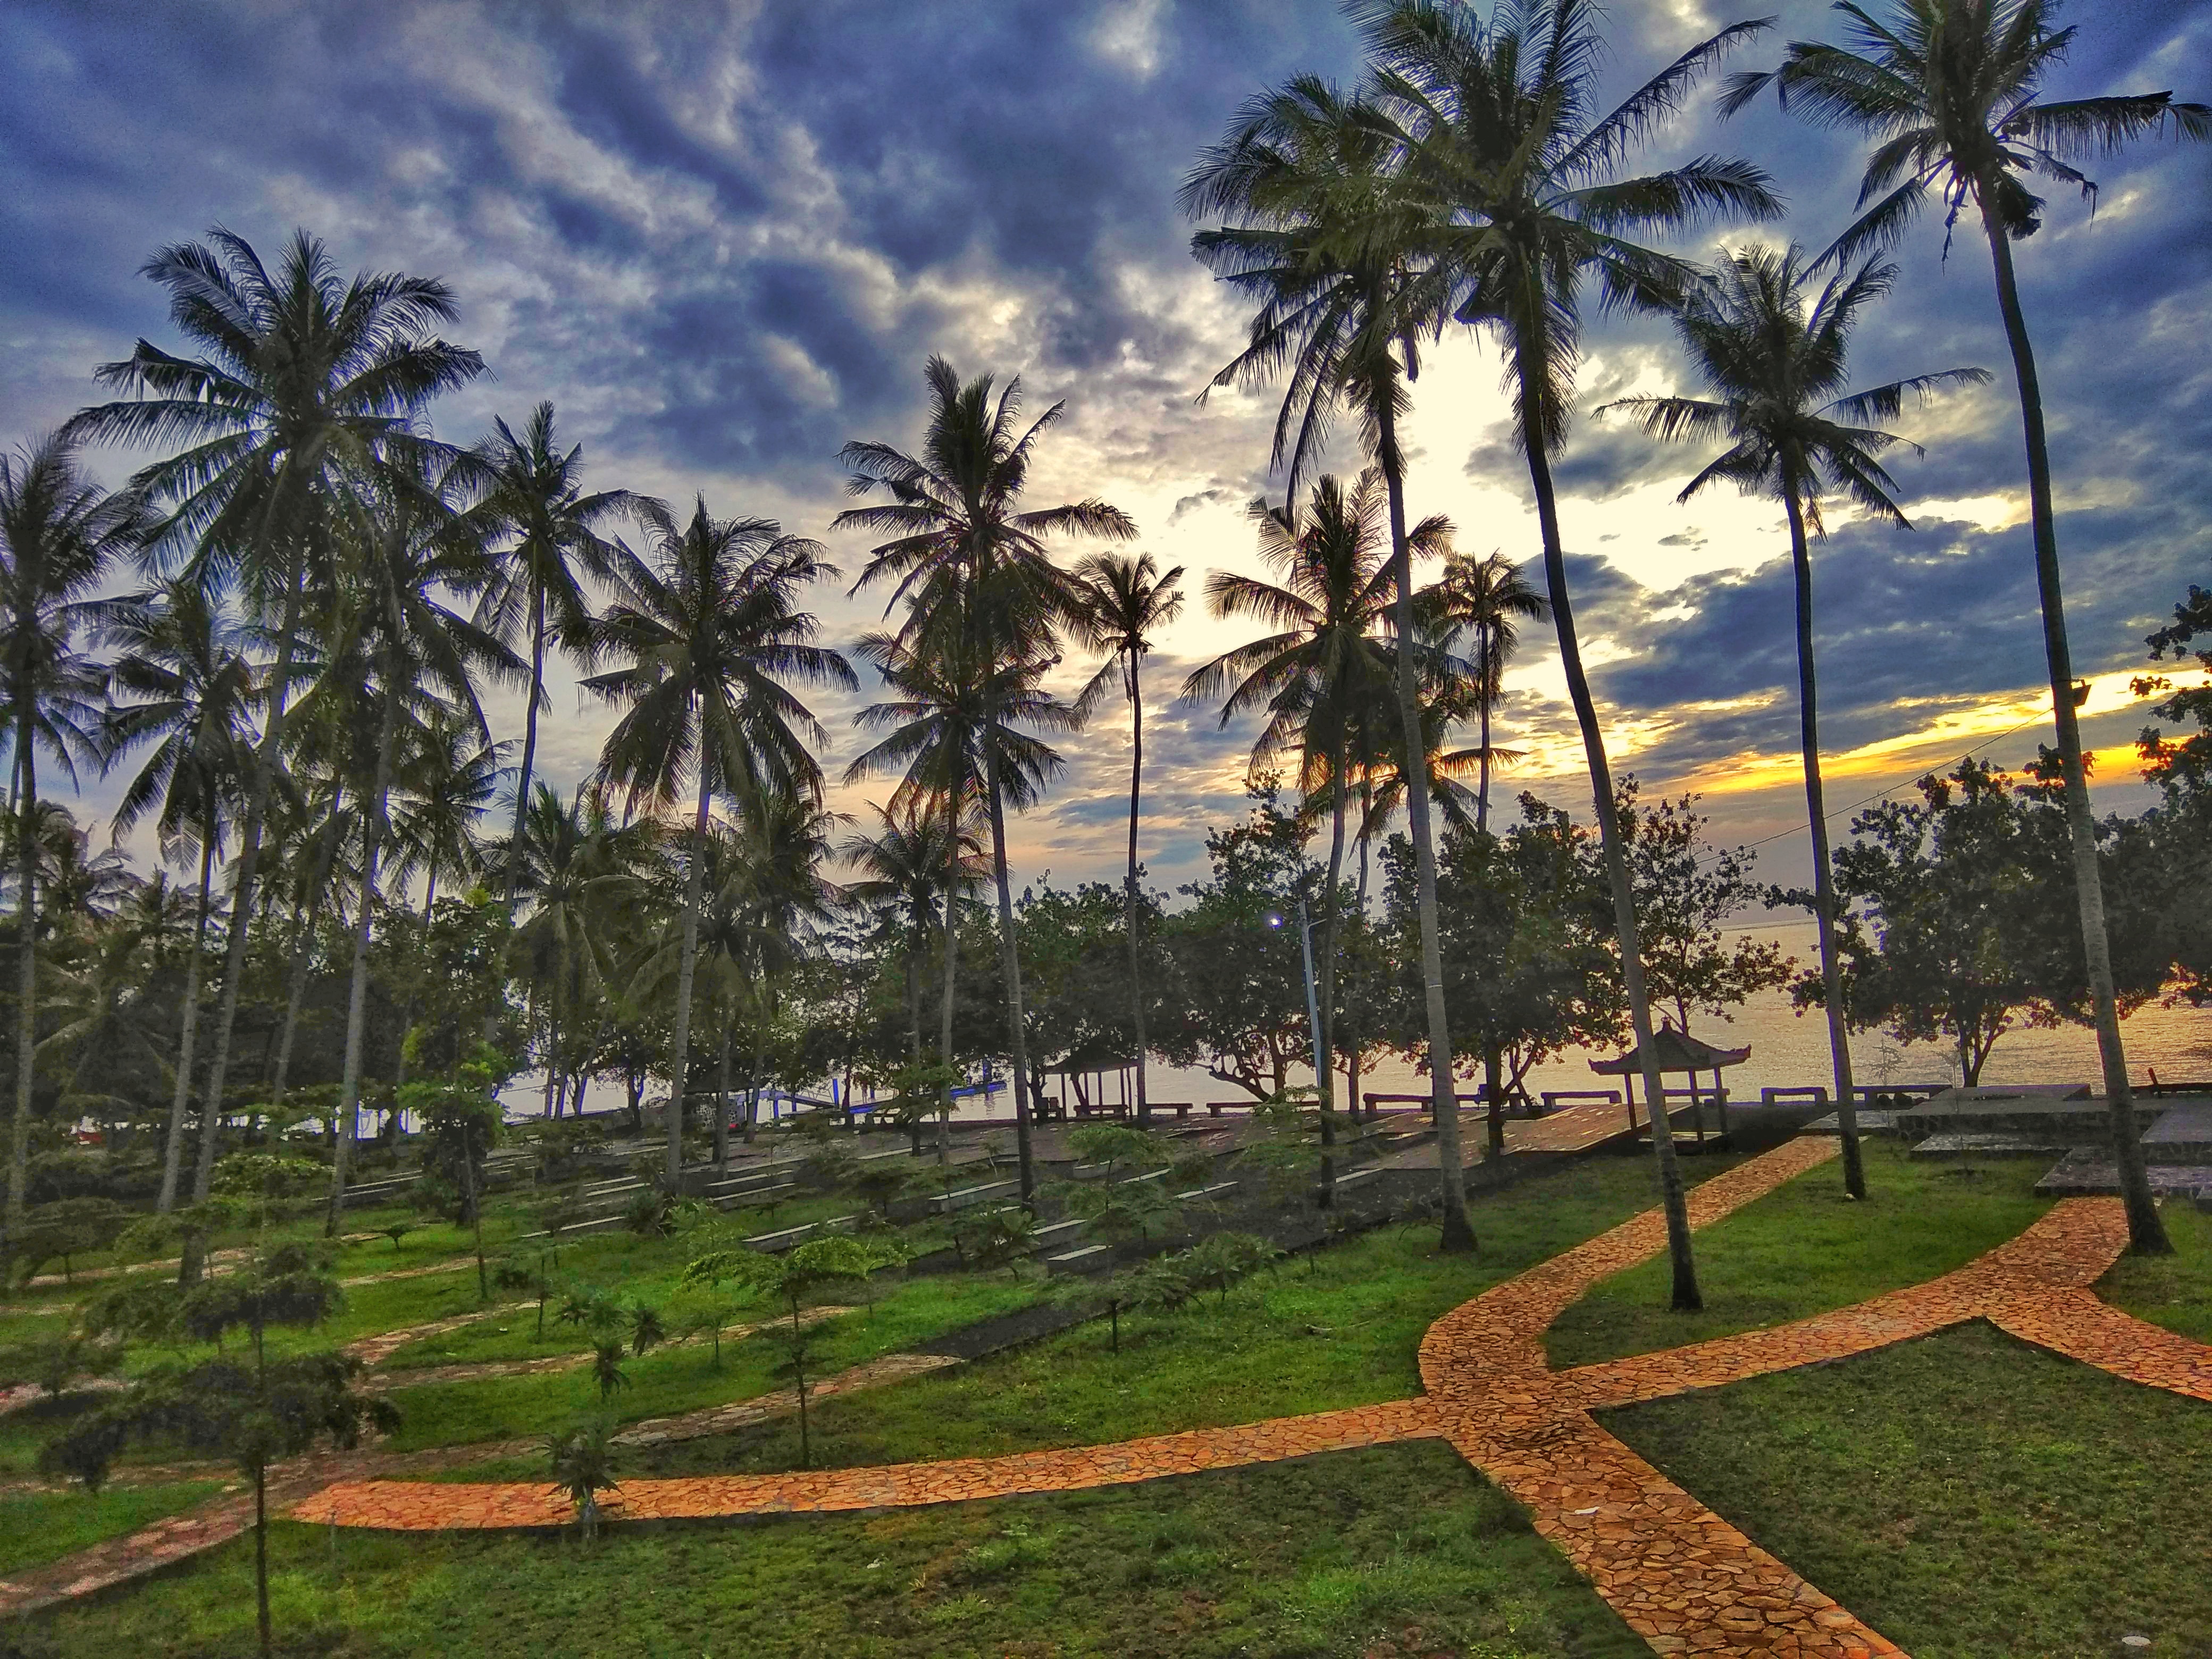 Suasana Pantai Grand Watu Dodol dengan pohon kelapa yang menjulang tinggi